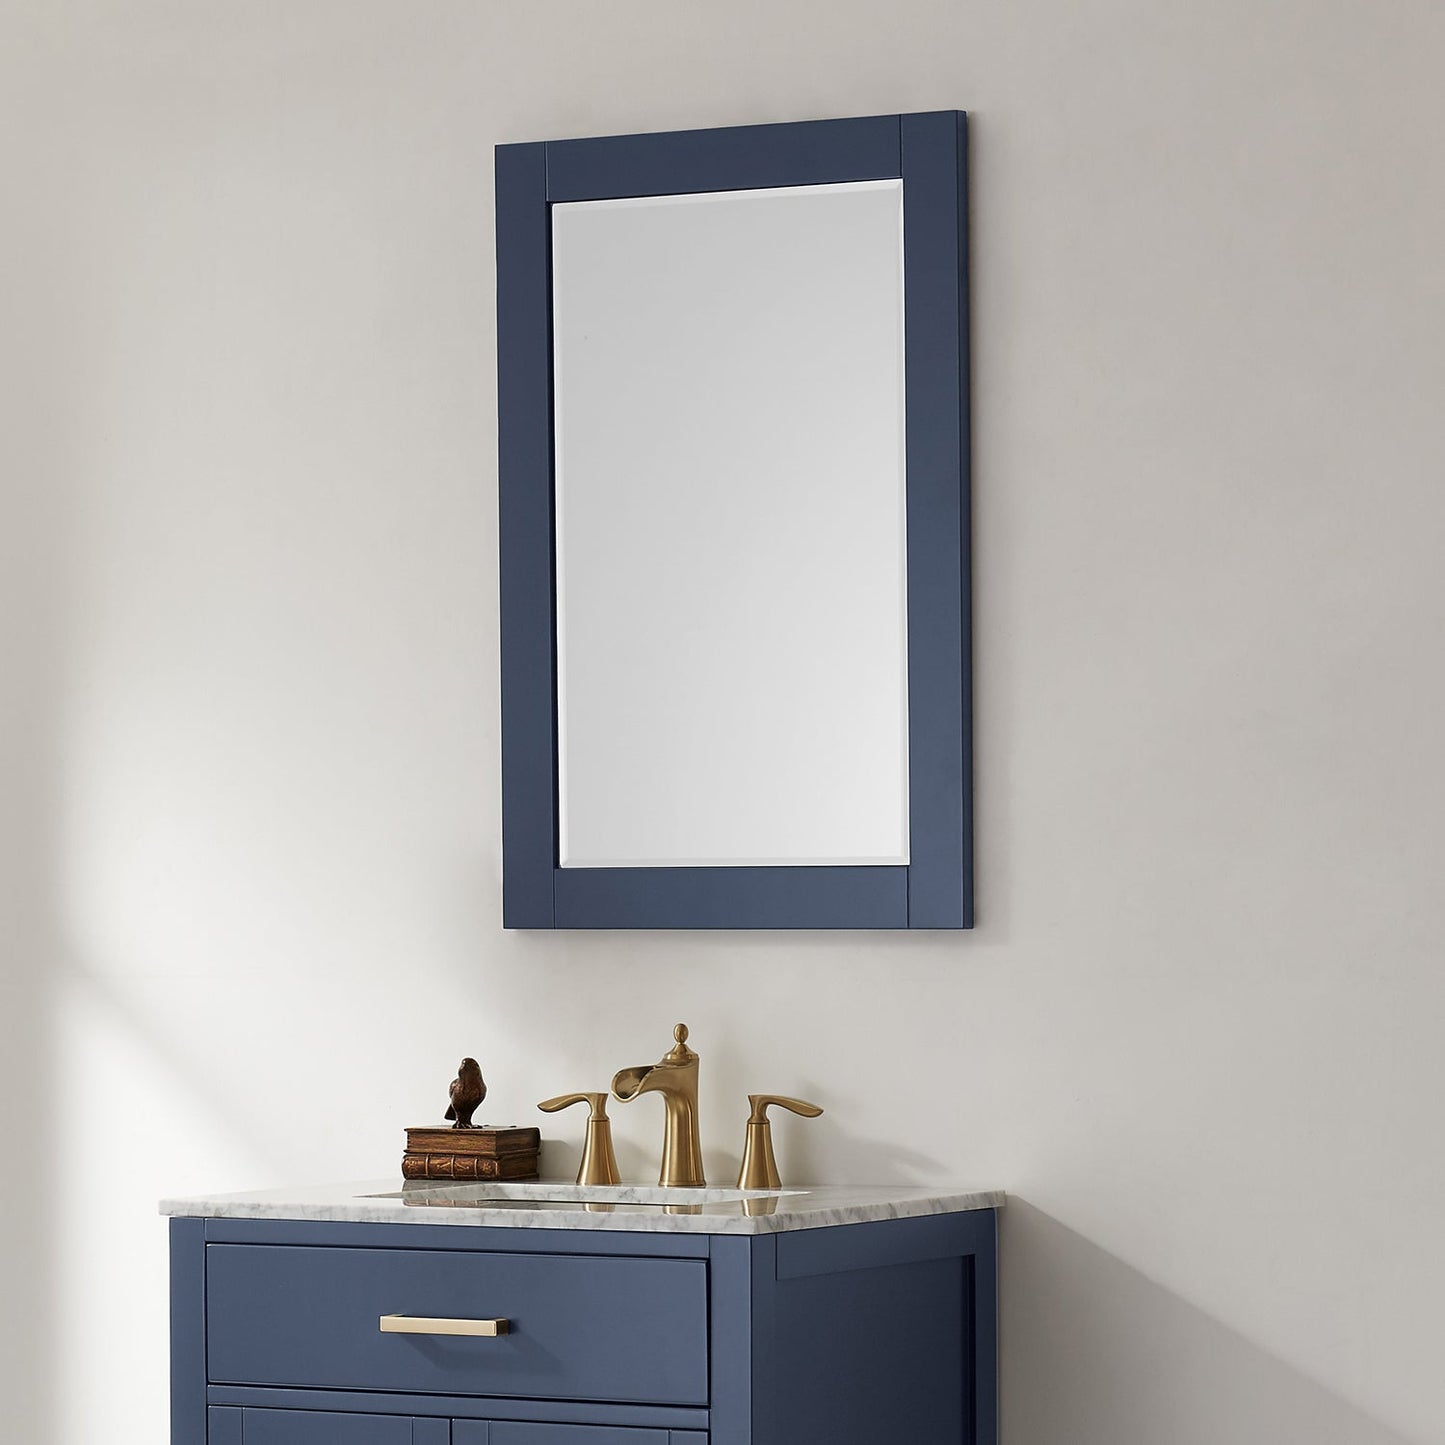 Ivy 24" Rectangular Bathroom Wood Framed Wall Mirror in Royal Blue